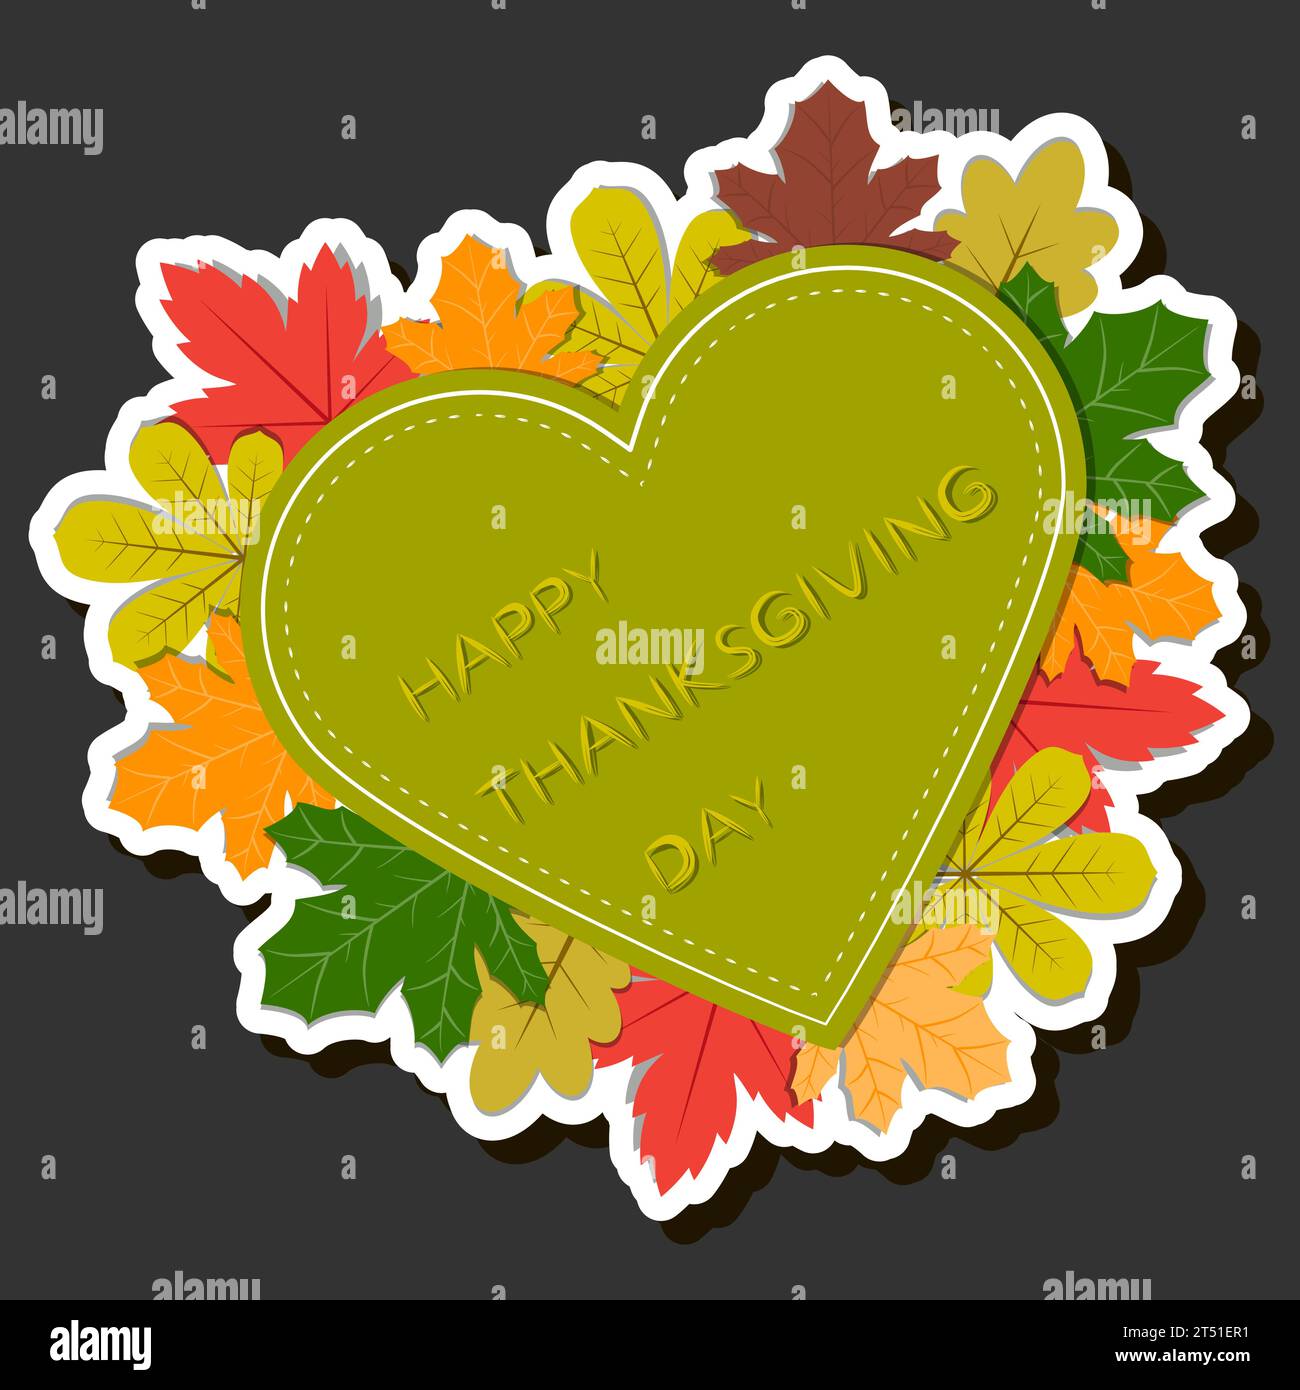 Schöne farbige Illustration zum Thema der Feier des jährlichen Feiertags Thanksgiving Day Stock Vektor